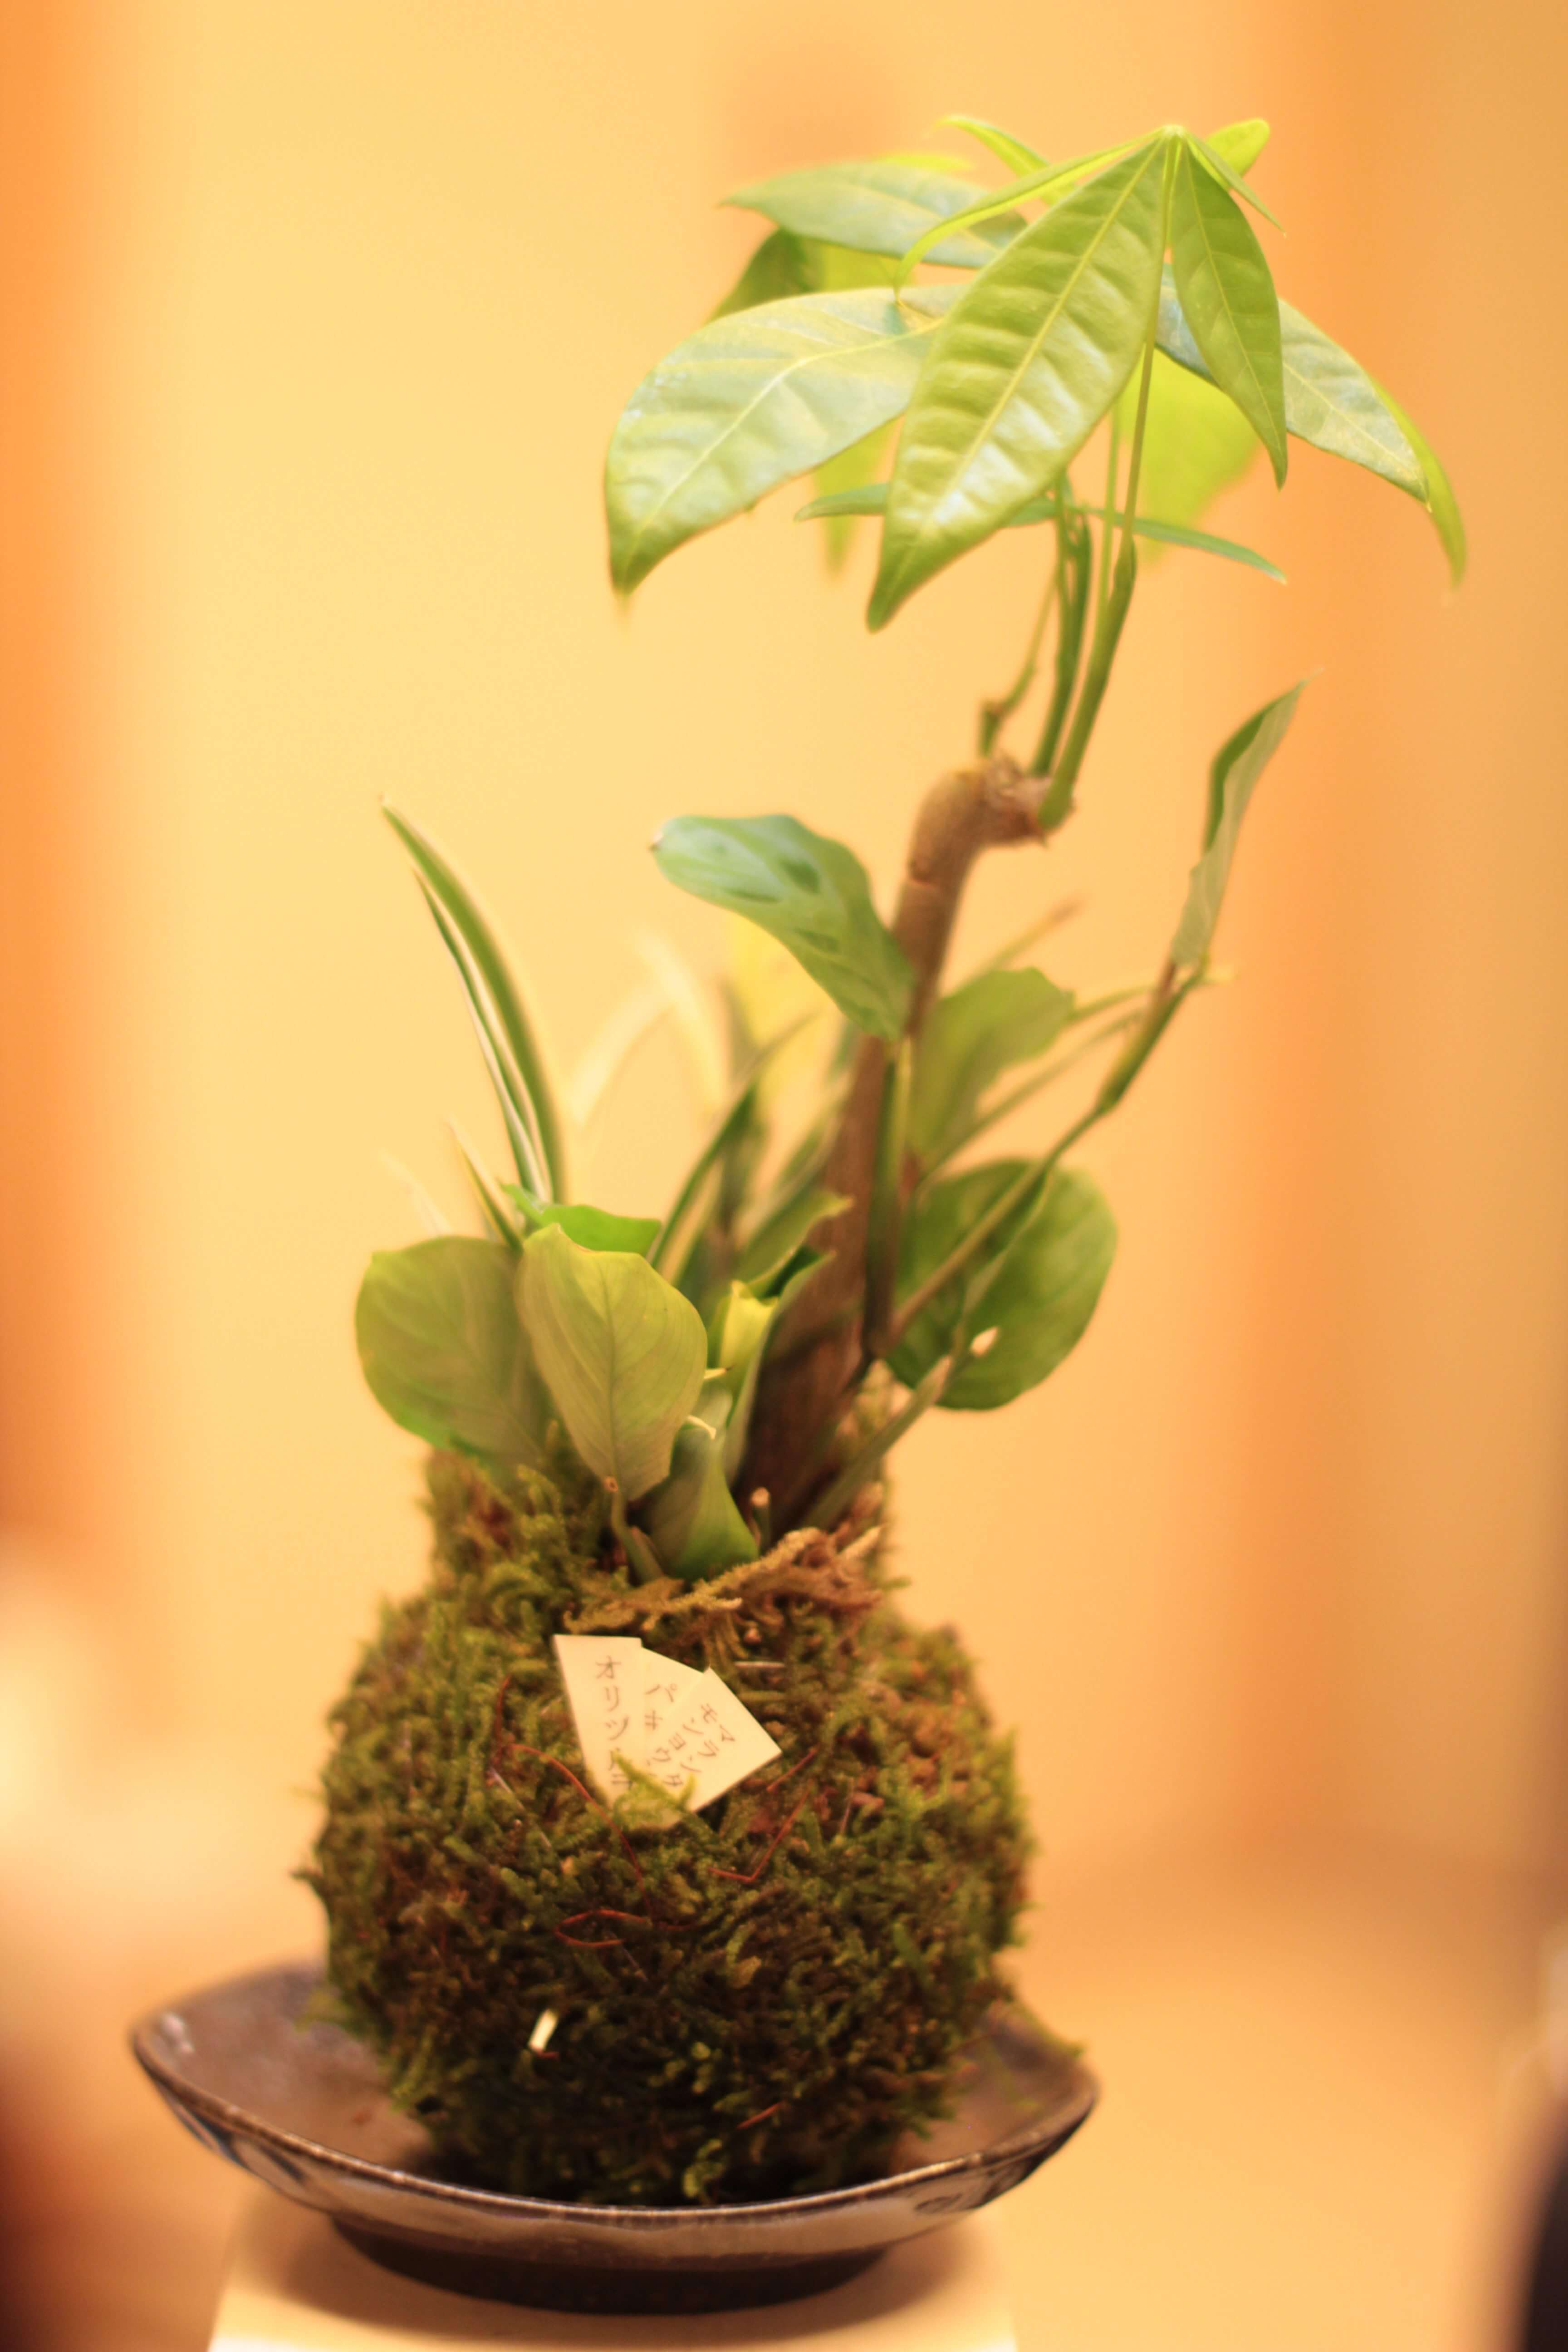 【苔玉】ジブリ世界のような苔テラリウムを体験できる「苔玉」の癒しがとてもいい!机の上に小さな自然